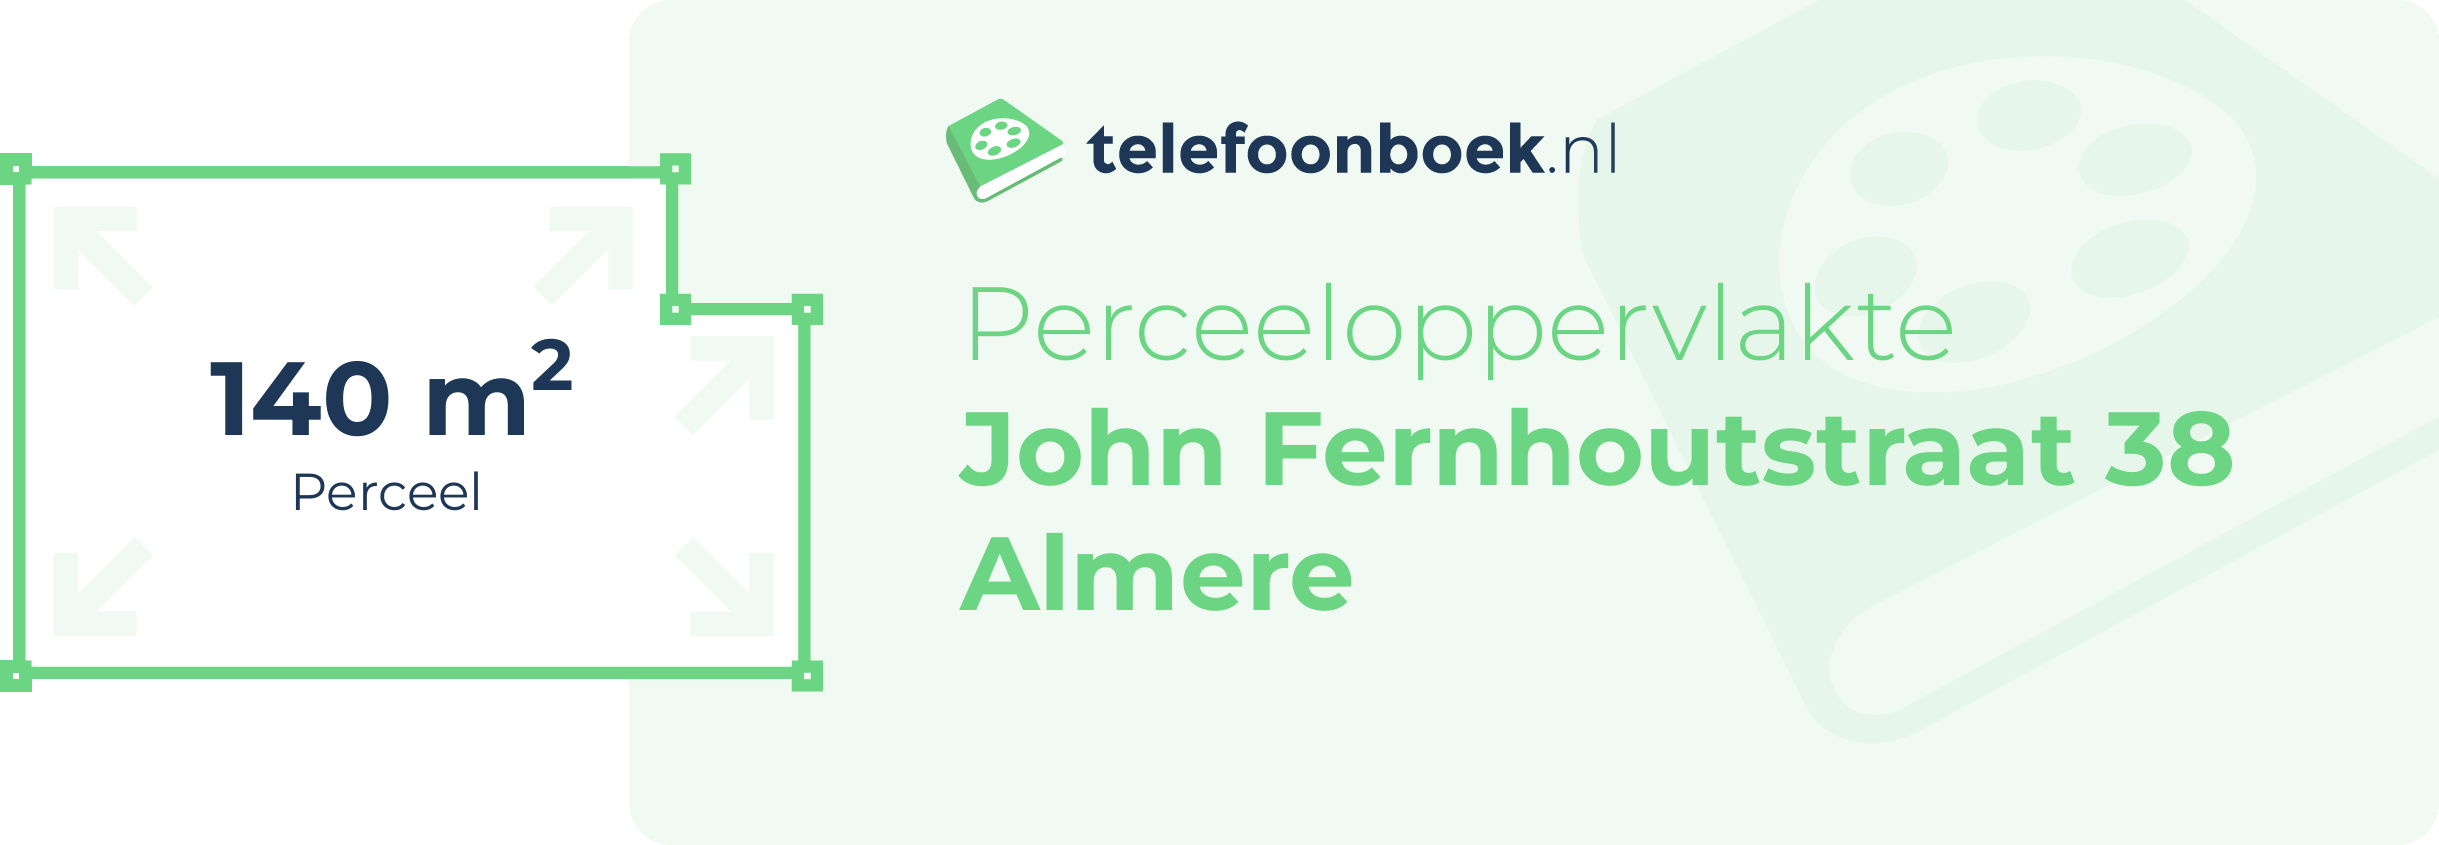 Perceeloppervlakte John Fernhoutstraat 38 Almere